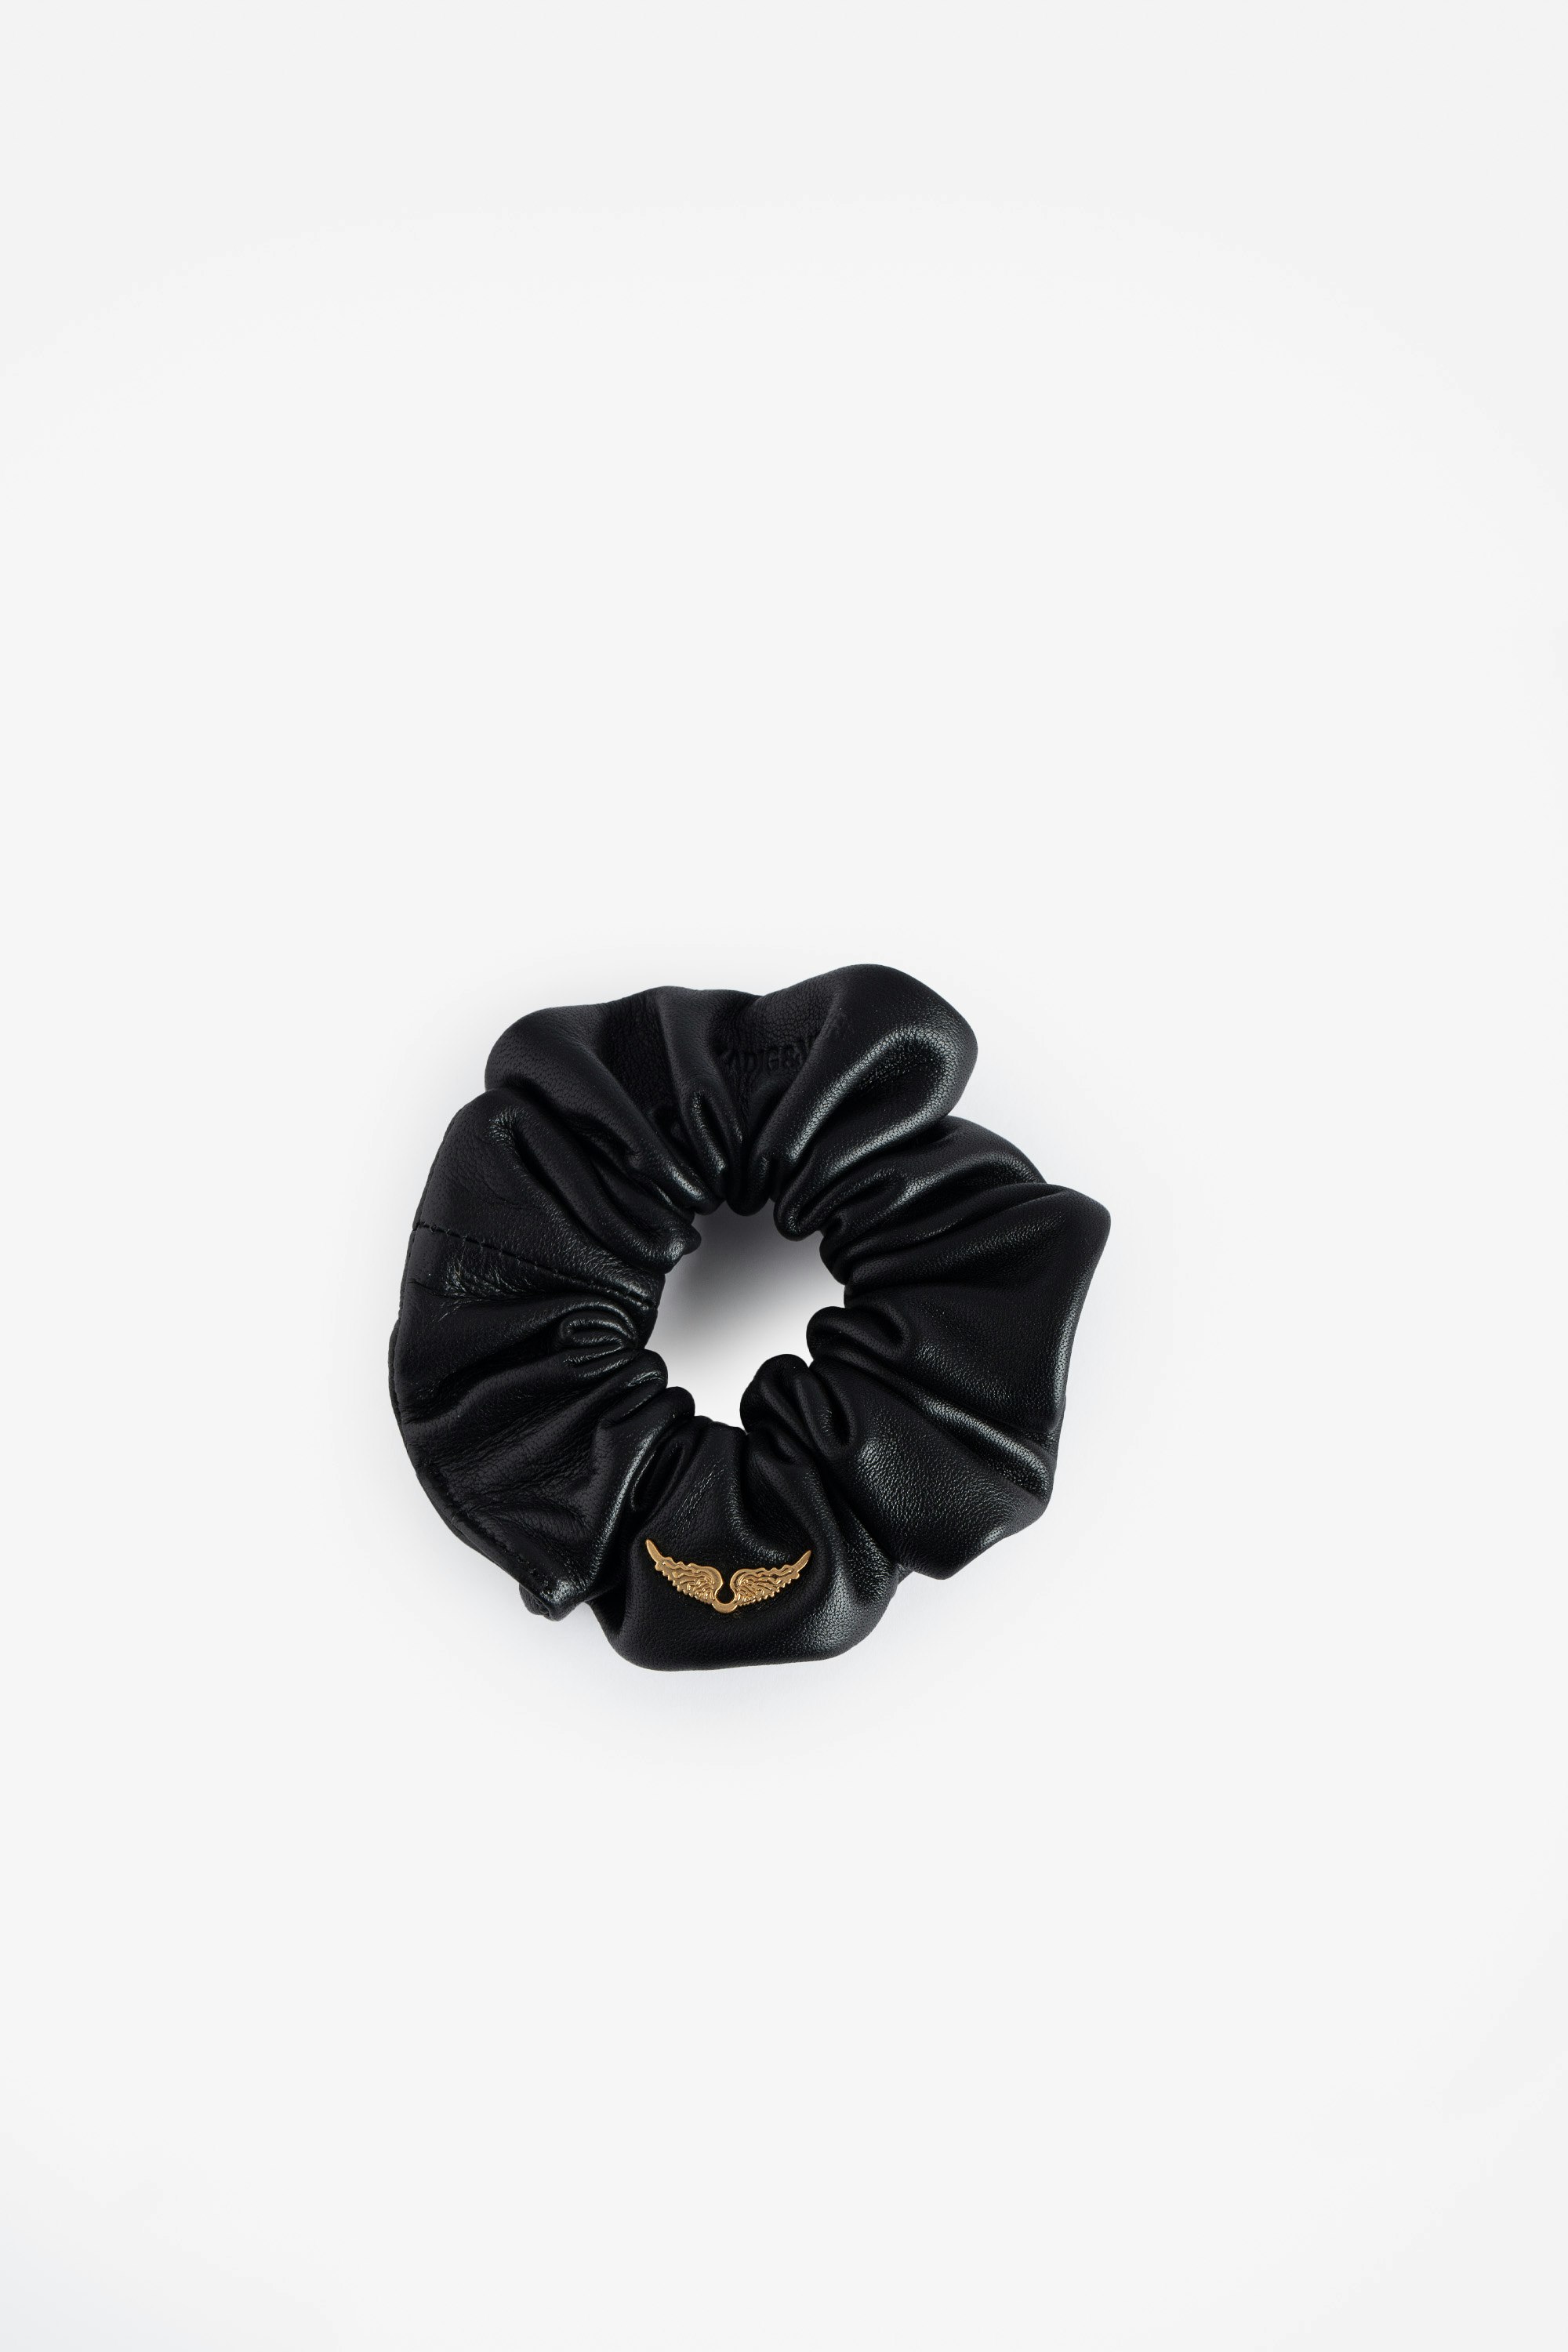 Scrunchie Chouchou - Voltaire Vice Scrunchie aus schwarzem Leder mit Flügelmotiv.